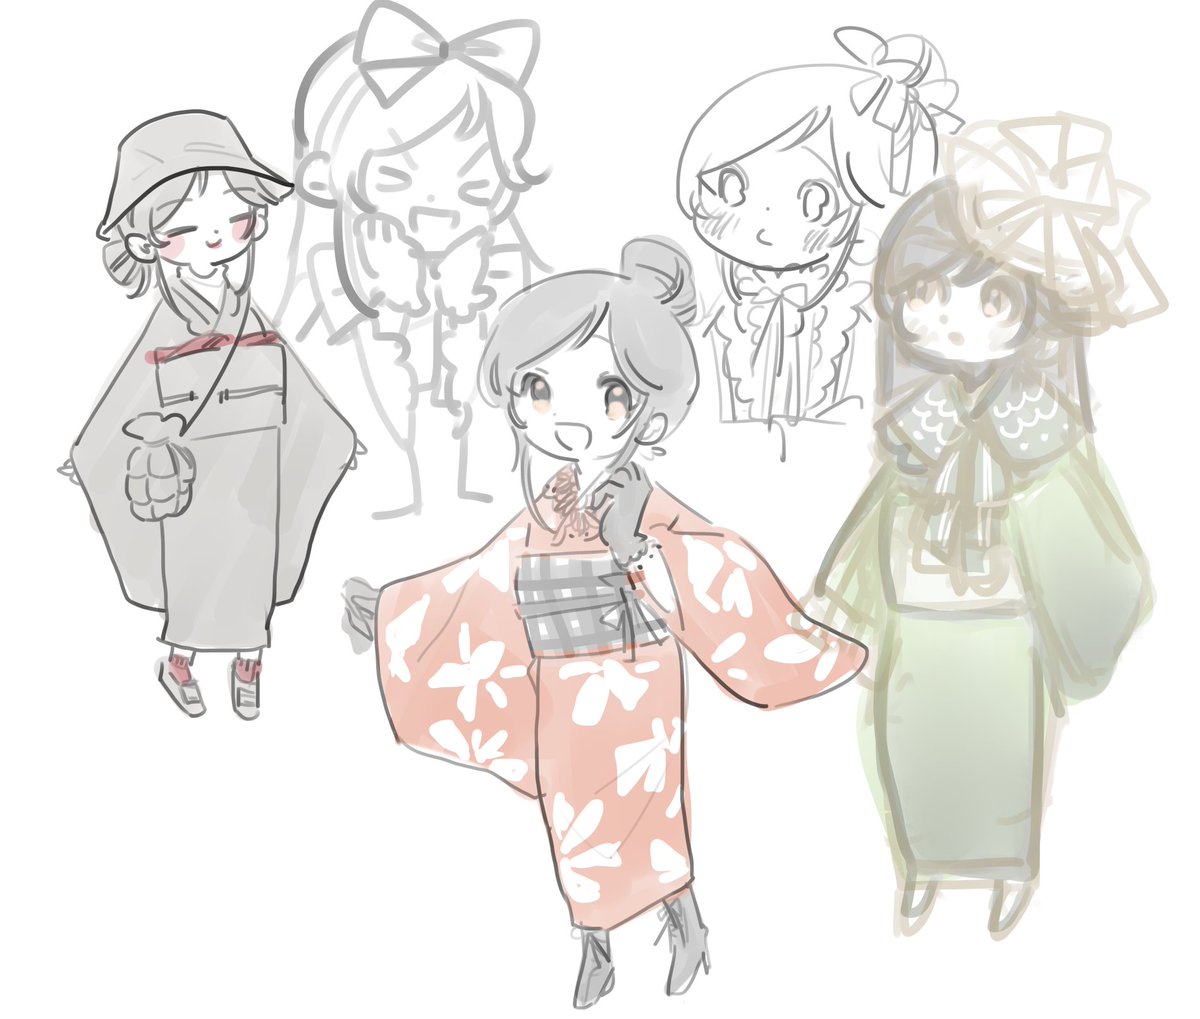 japanese clothes kimono obi sash gloves smile hair bun  illustration images